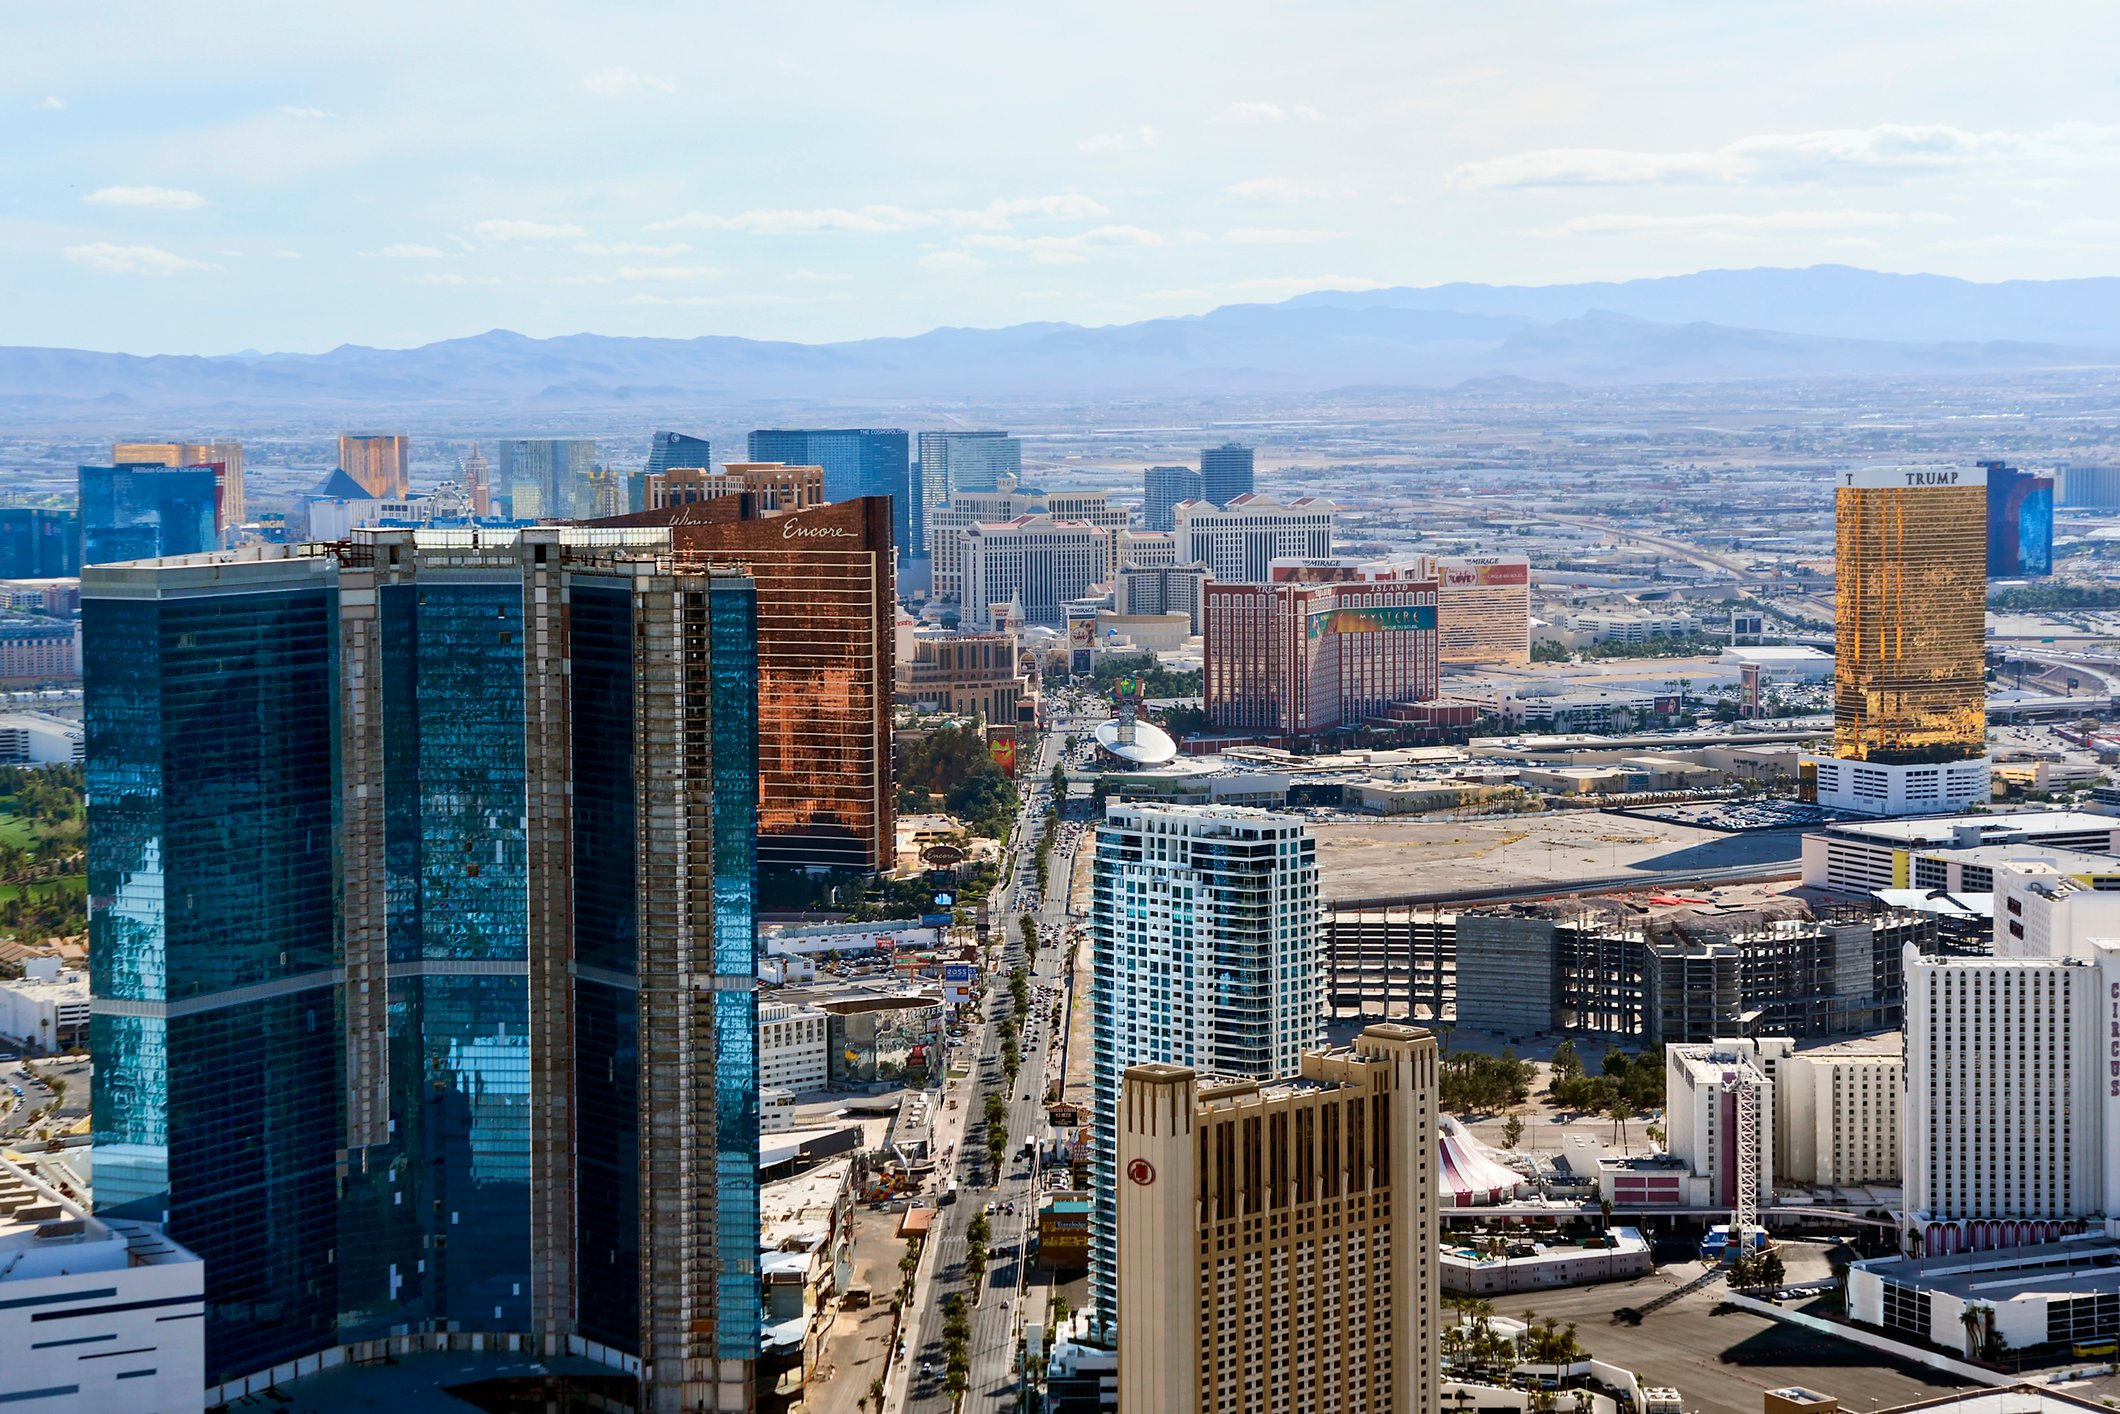 Marriott to open new resort and casino in Las Vegas